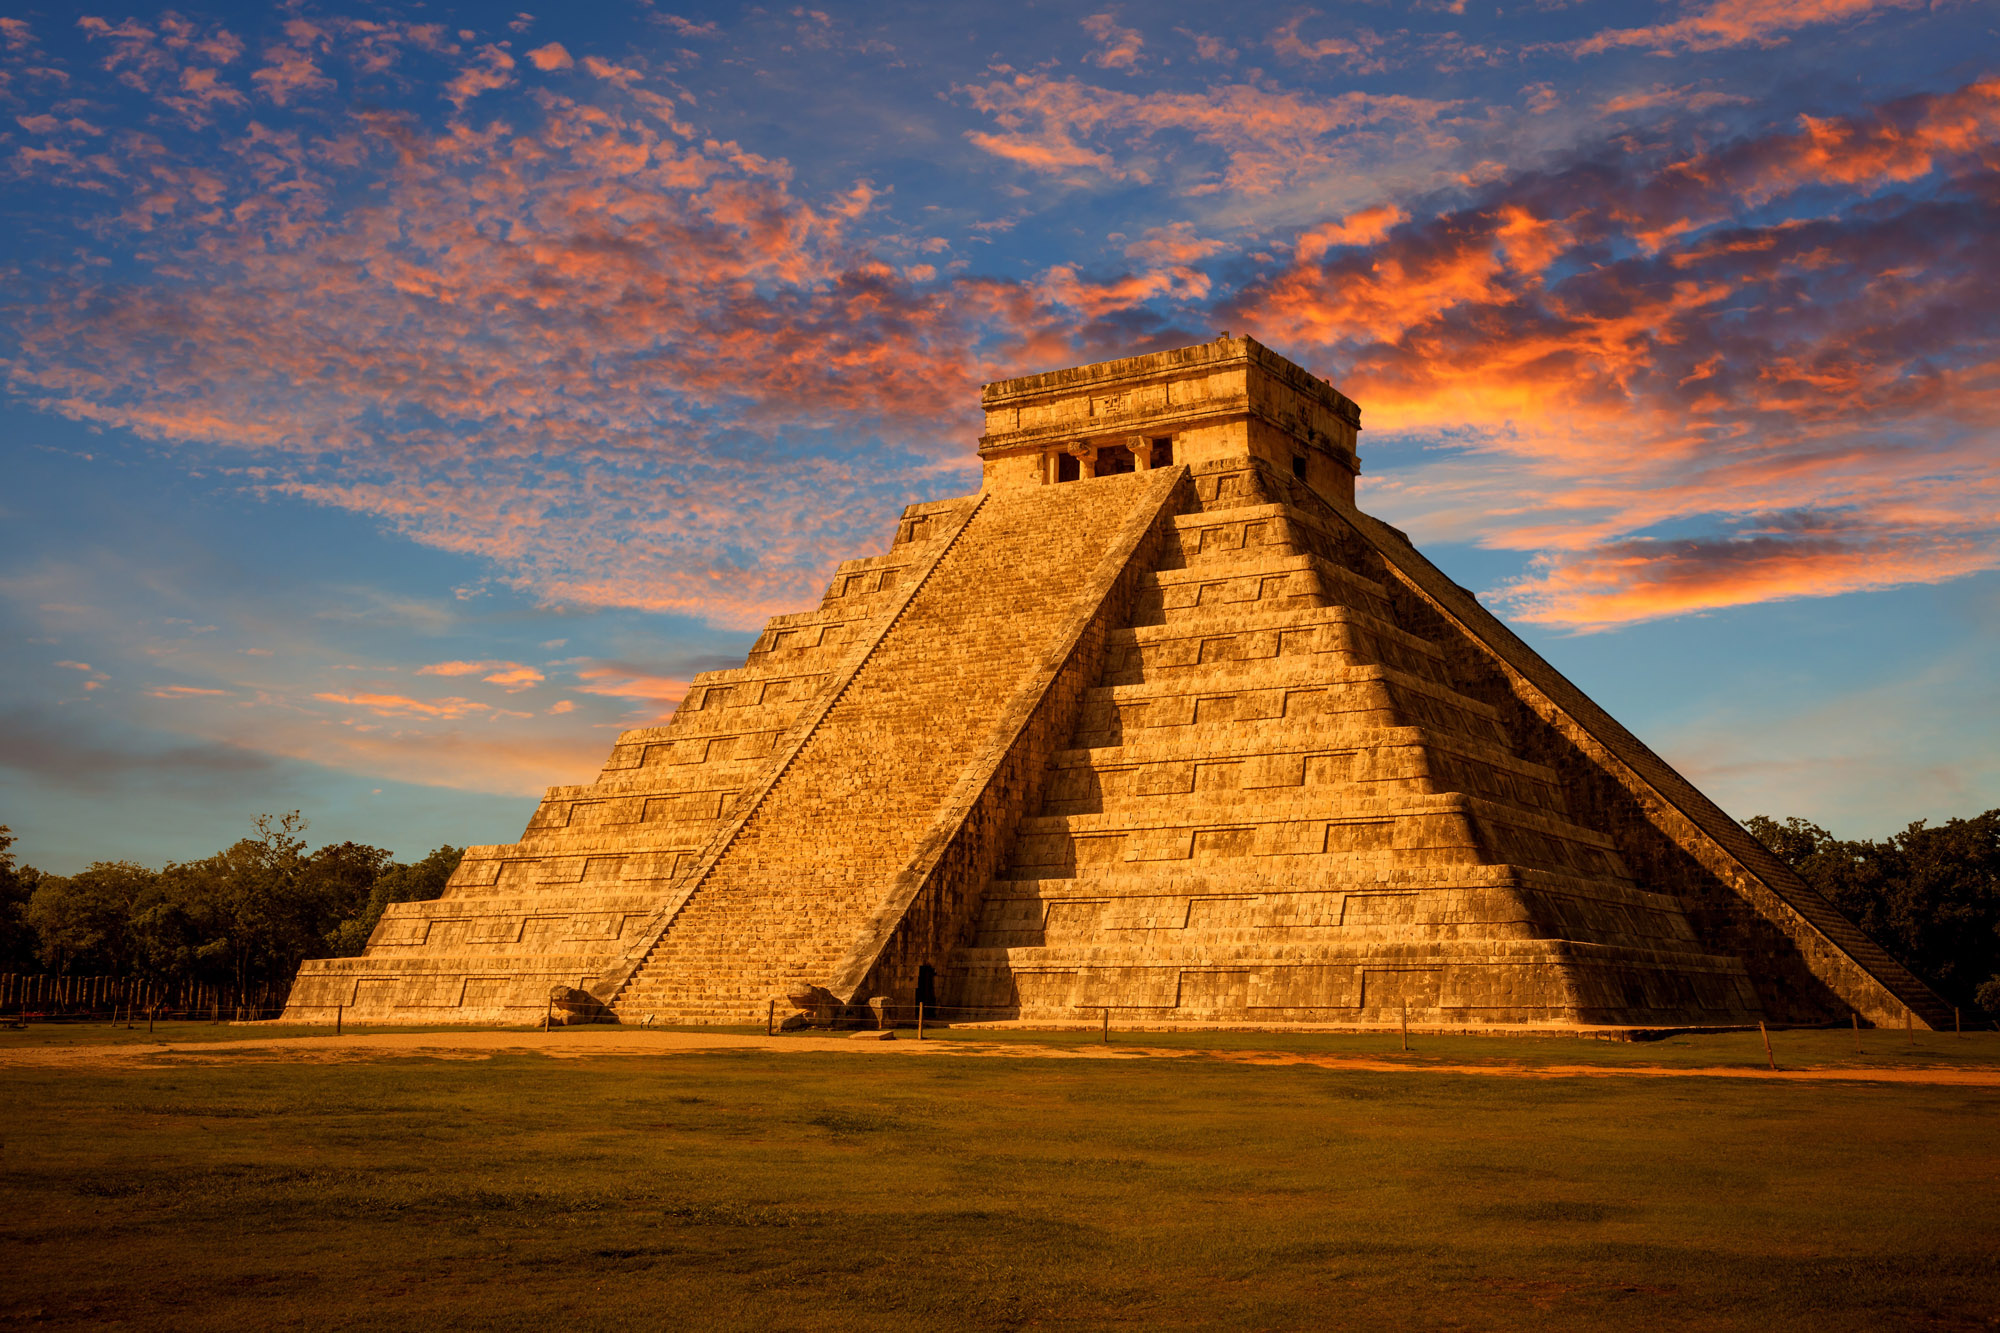 Чичен Ица и пирамида Кукулькана – древний город индейцев майя